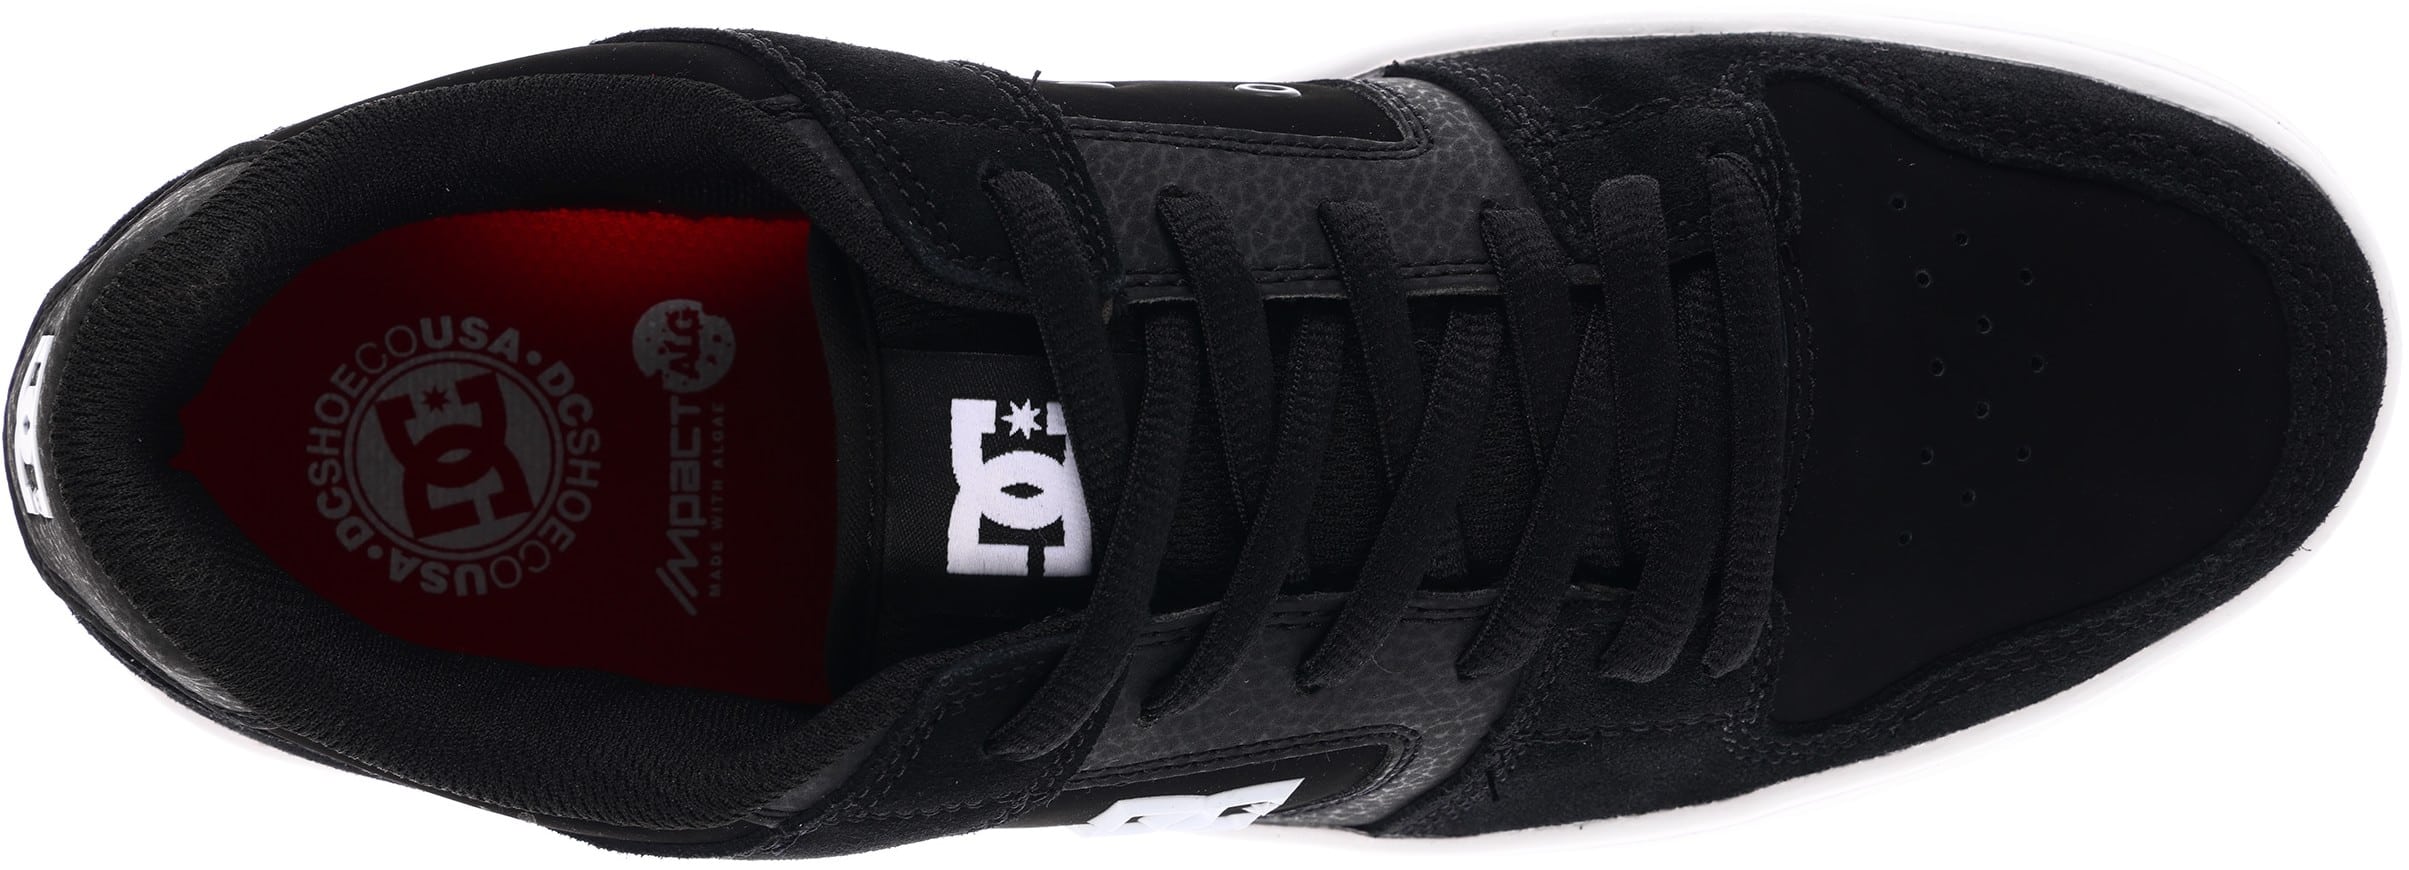 DC Shoes Manteca 4S Skate Shoes - black/white/gum | Tactics